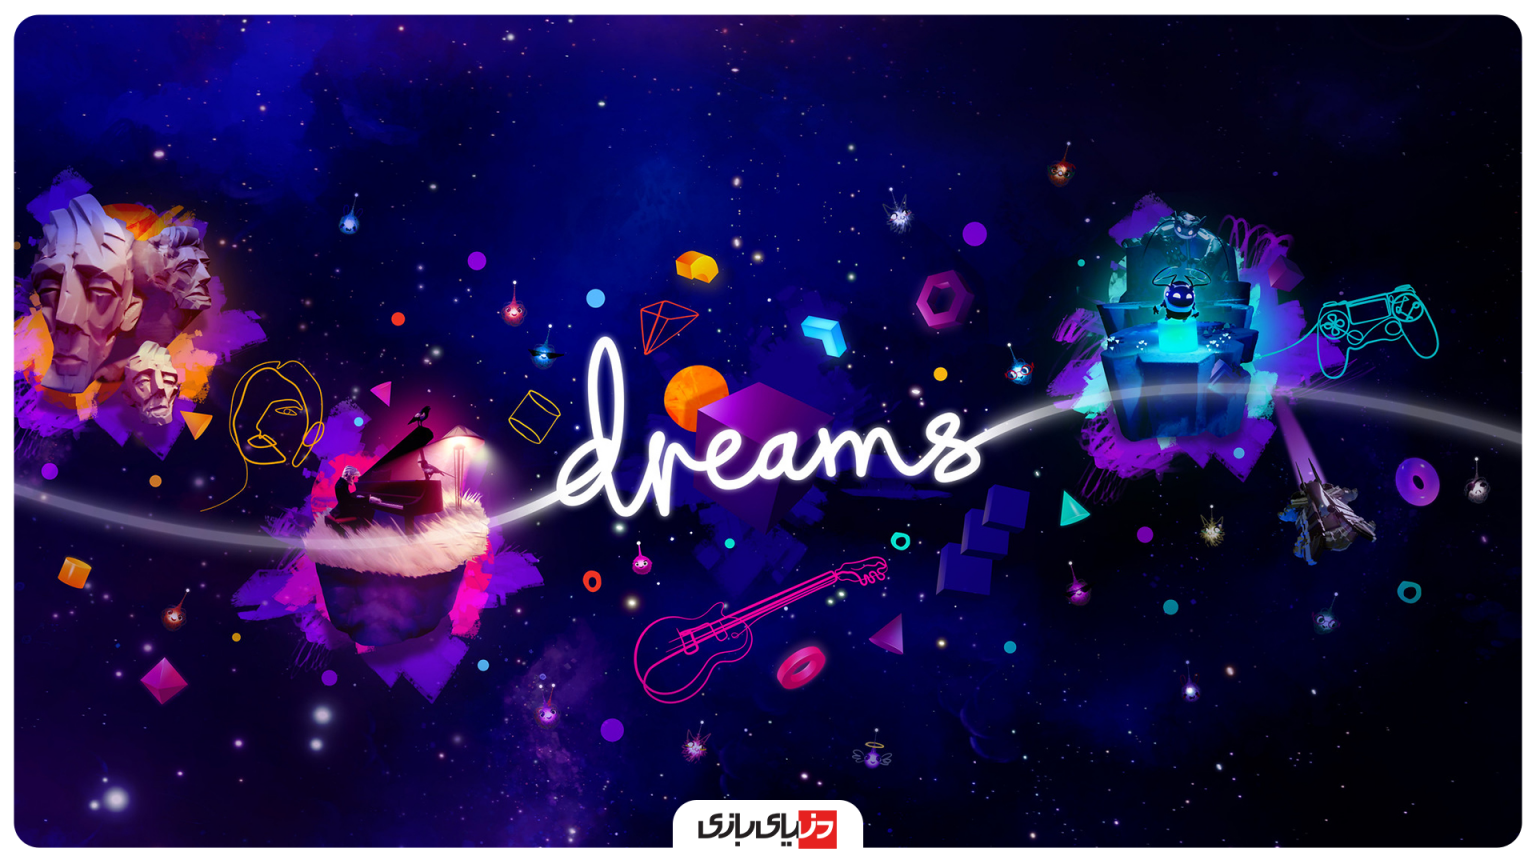 Dreams-1536x864.png